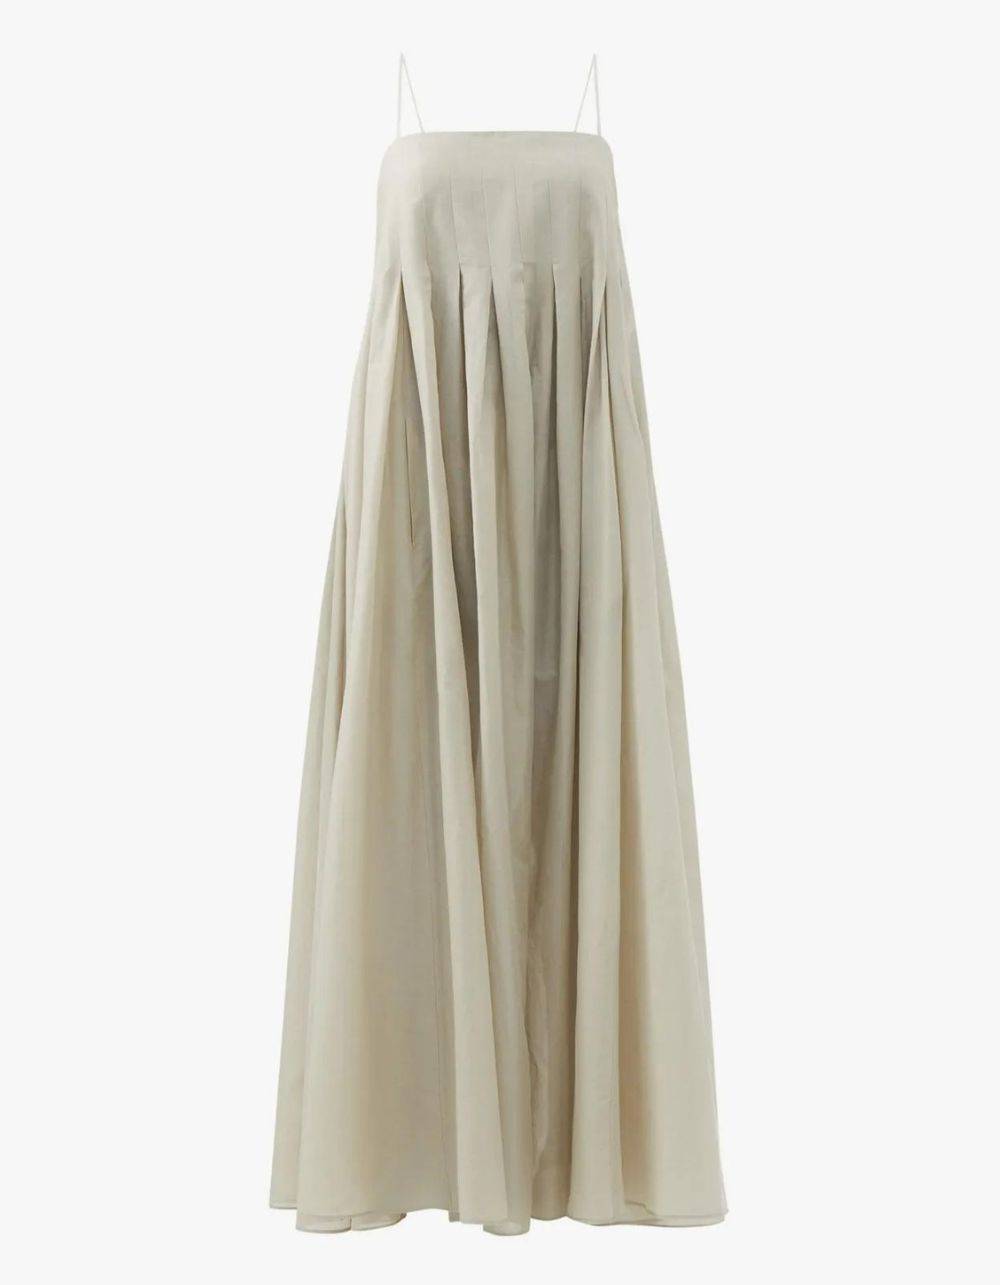 Beżowa sukienka na lato 2023 Raey, ok. 2090 zł (Fot. materiały prasowe)